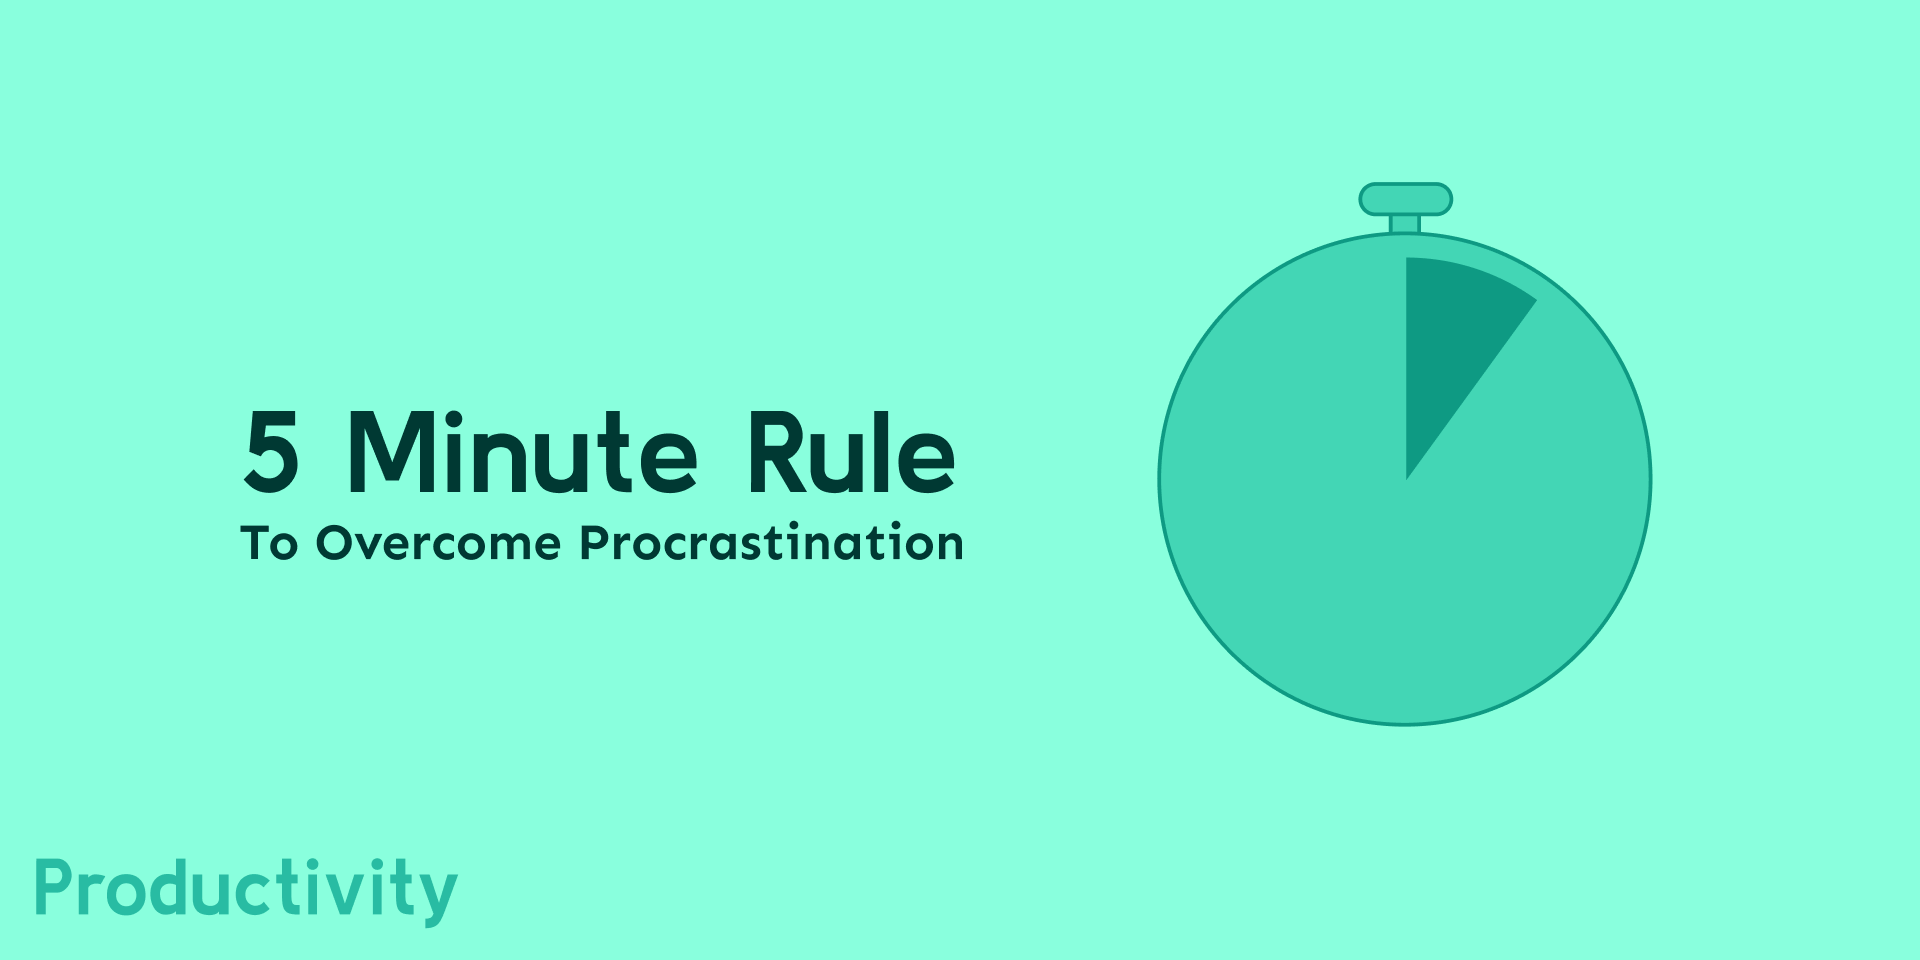 5 Minute Rule to Overcome Procrastination